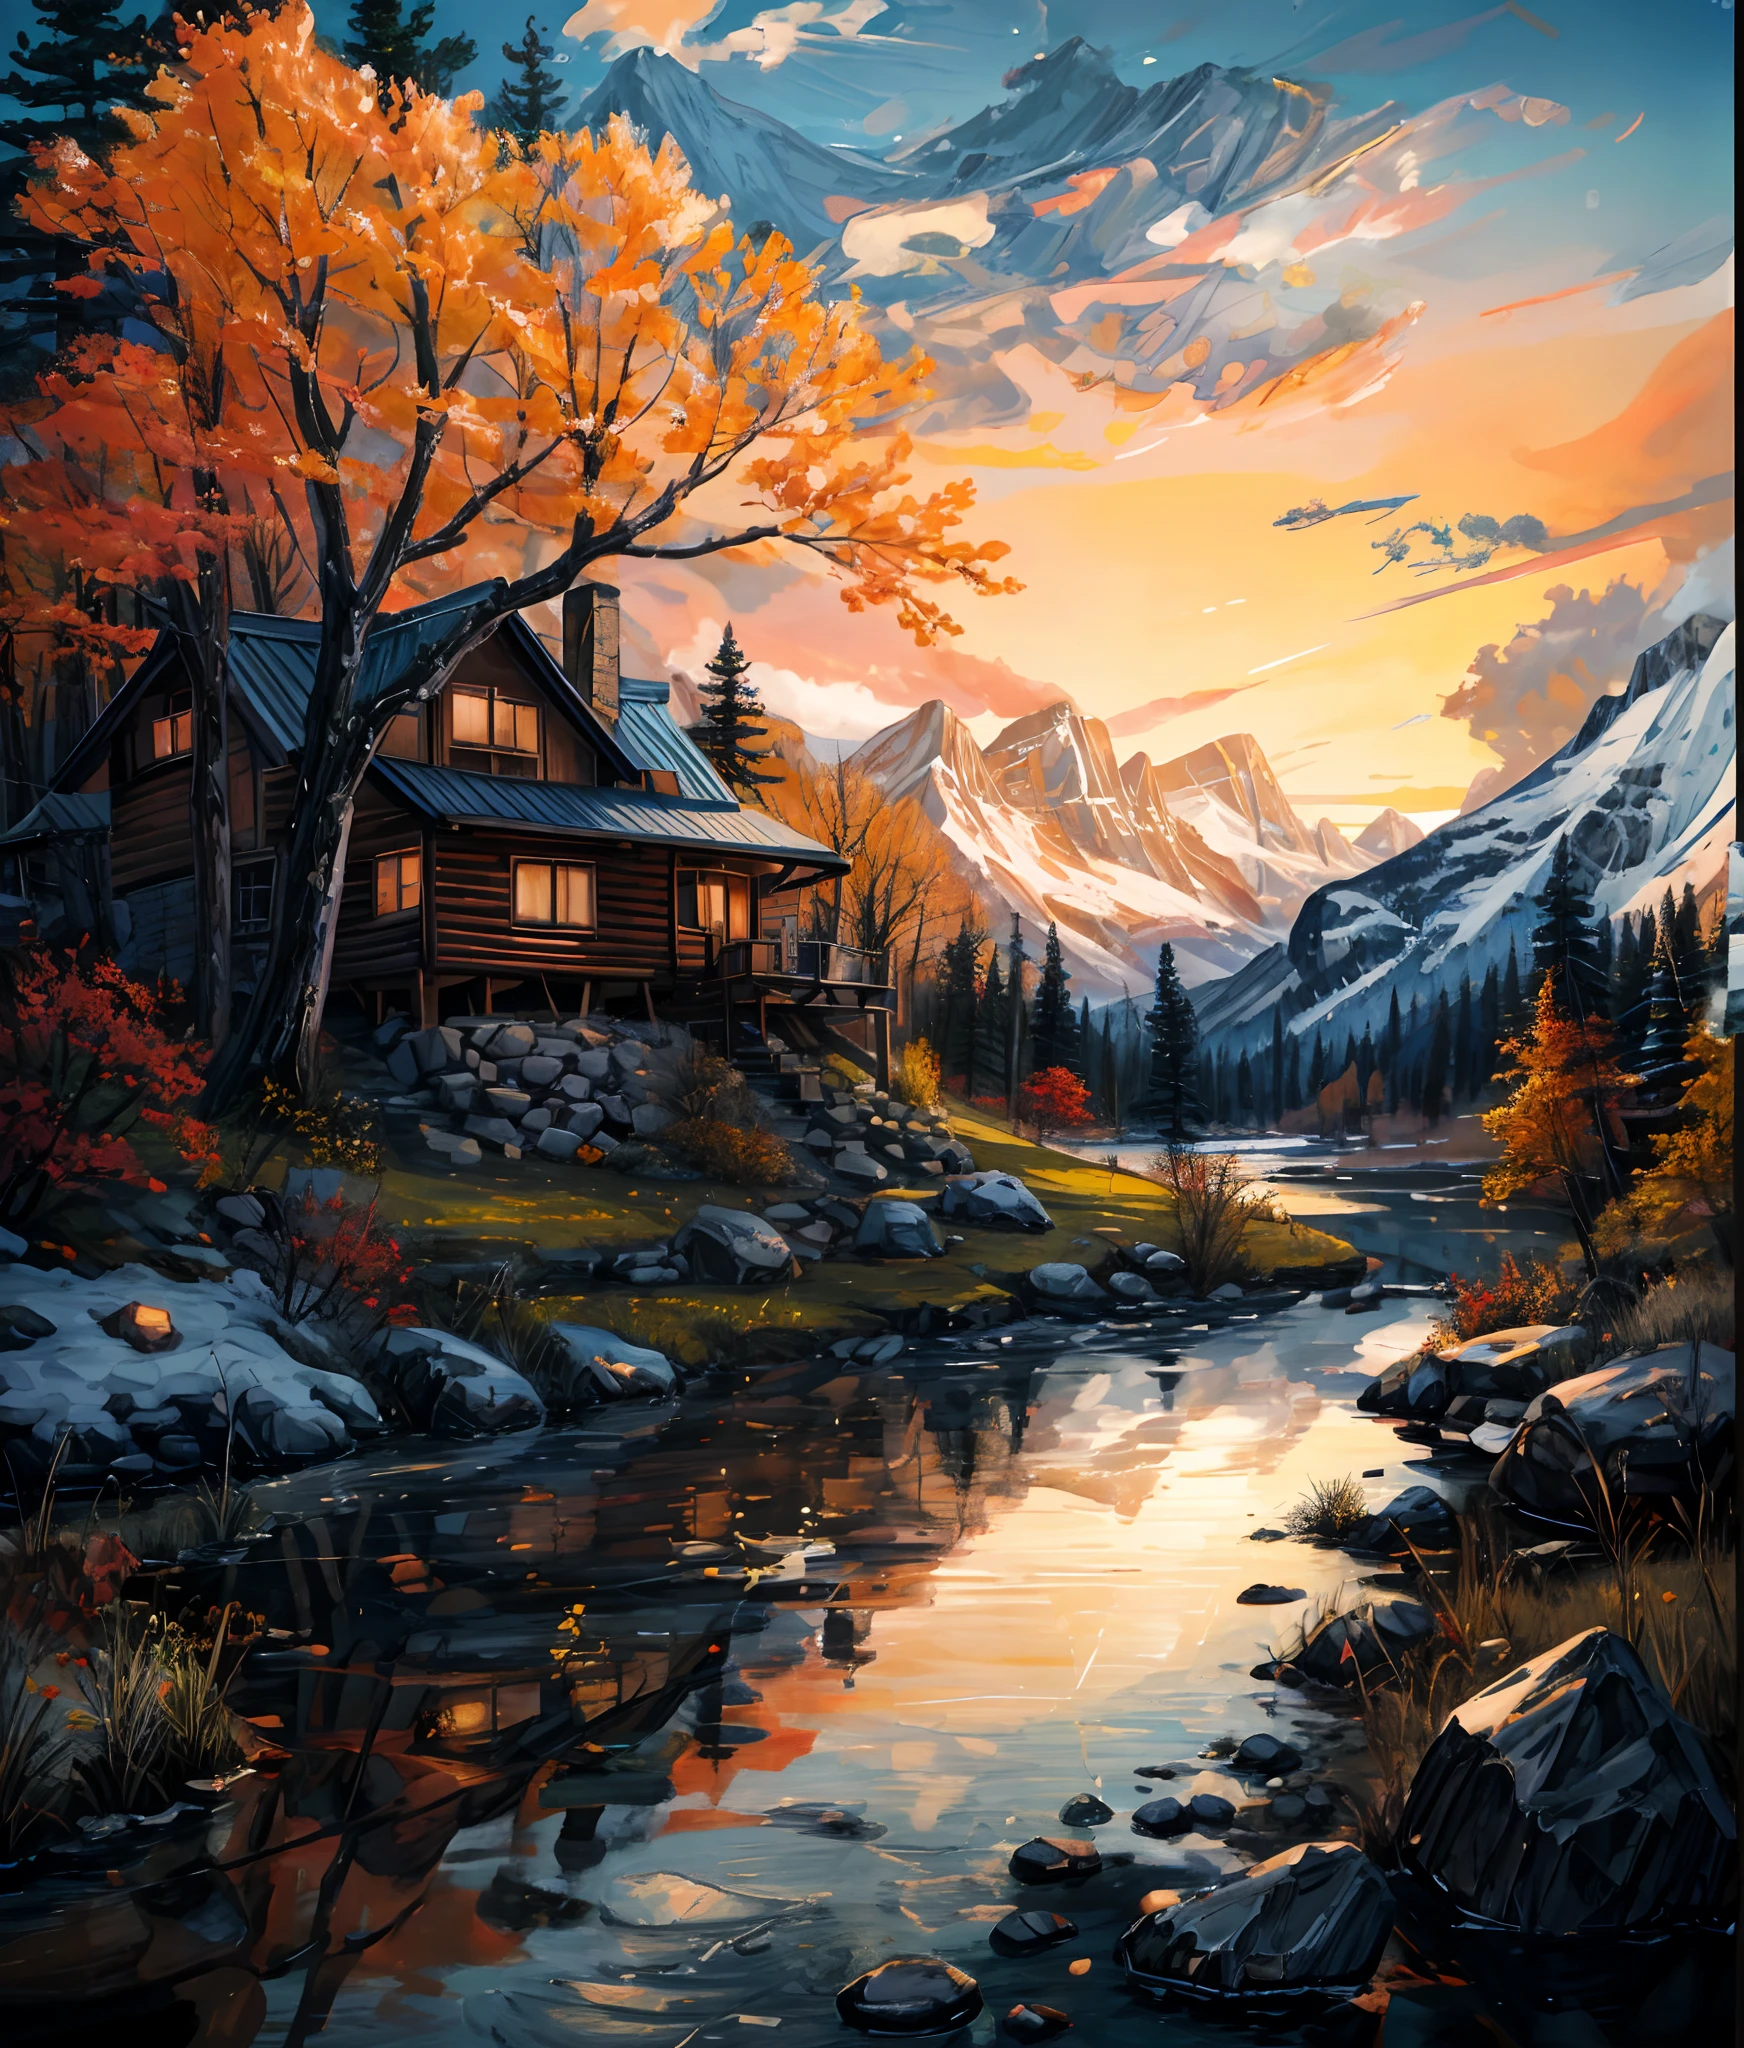 湖と山を背景にした山小屋の絵, 詳細な絵画 4k, 美しいアート UHD 4K, 8k HD 詳細な油絵, 詳細な4k油絵, 風景画 詳細, 色彩豊かで細部までこだわった, 油絵 4k, 油絵 4k, 美しいデジタル絵画, 非常に詳細なデジタル絵画